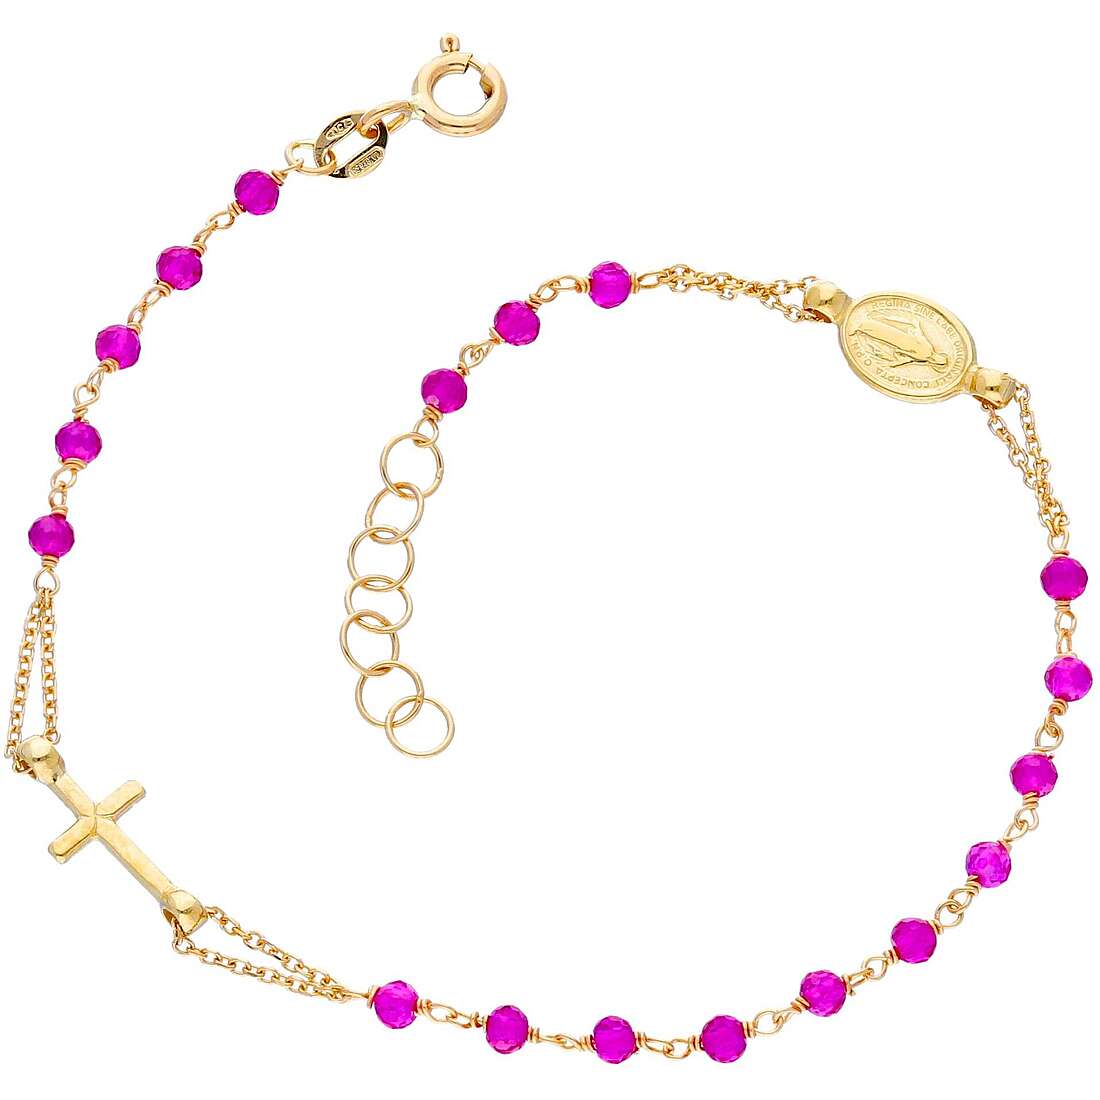 bracelet woman With Beads 18 kt Gold jewel GioiaPura Oro 750 GP-S242992